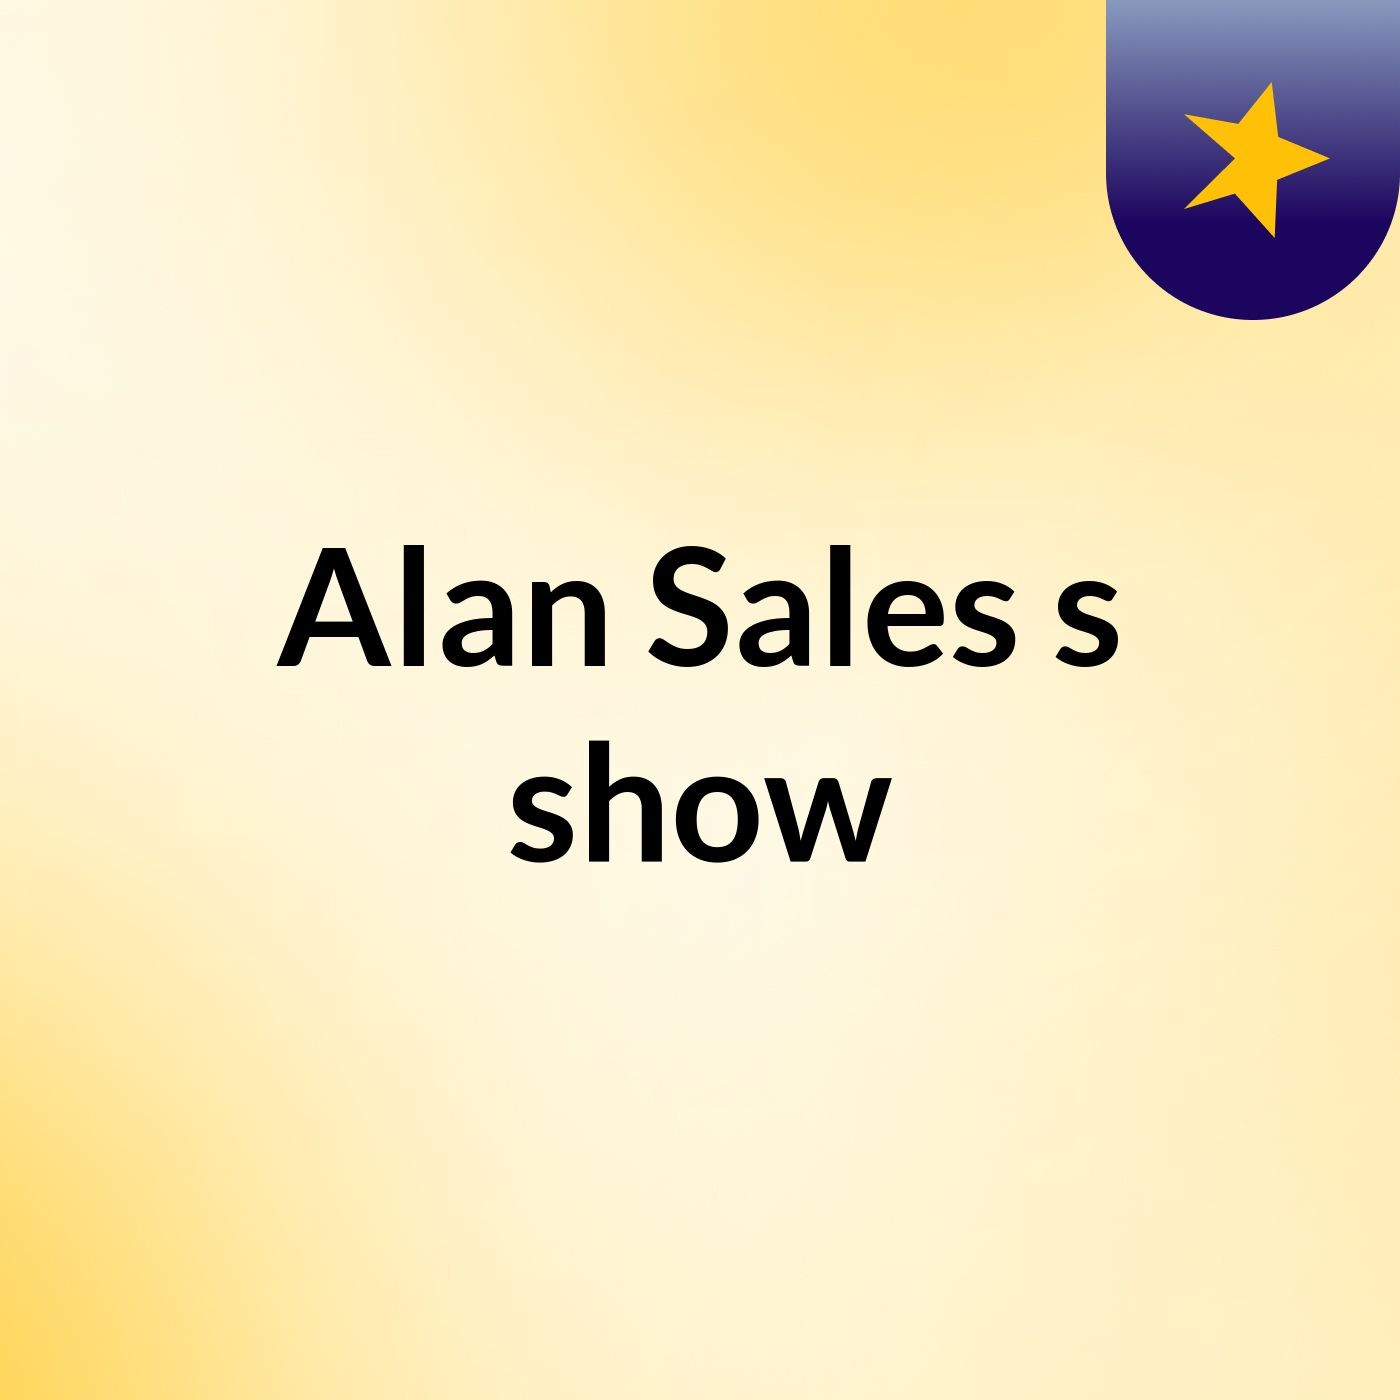 Alan Sales's show